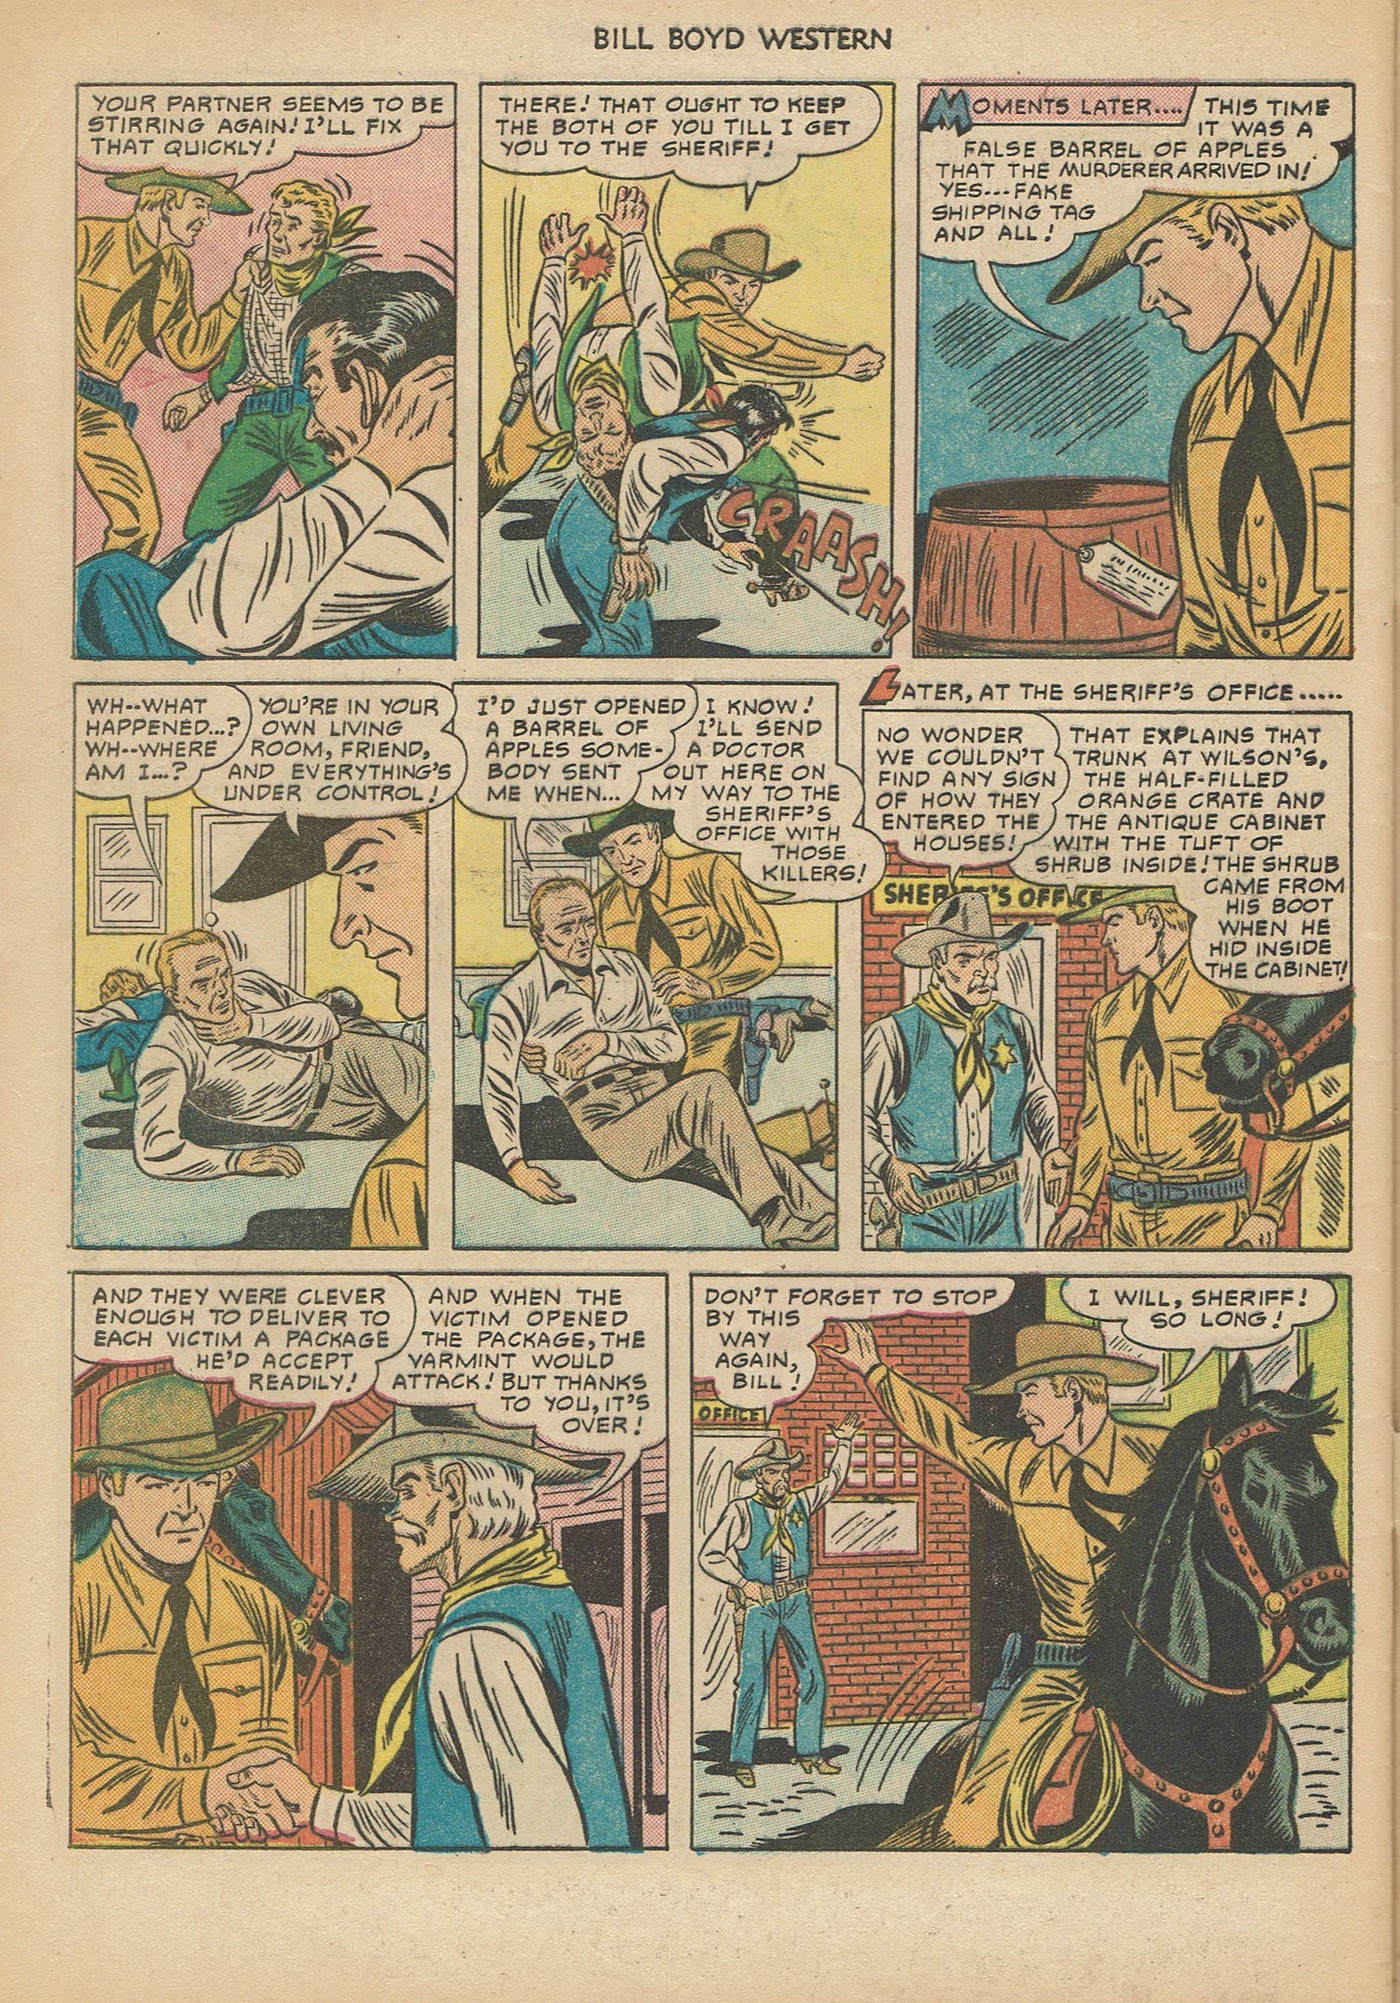 Read online Bill Boyd Western comic -  Issue #6 - 48